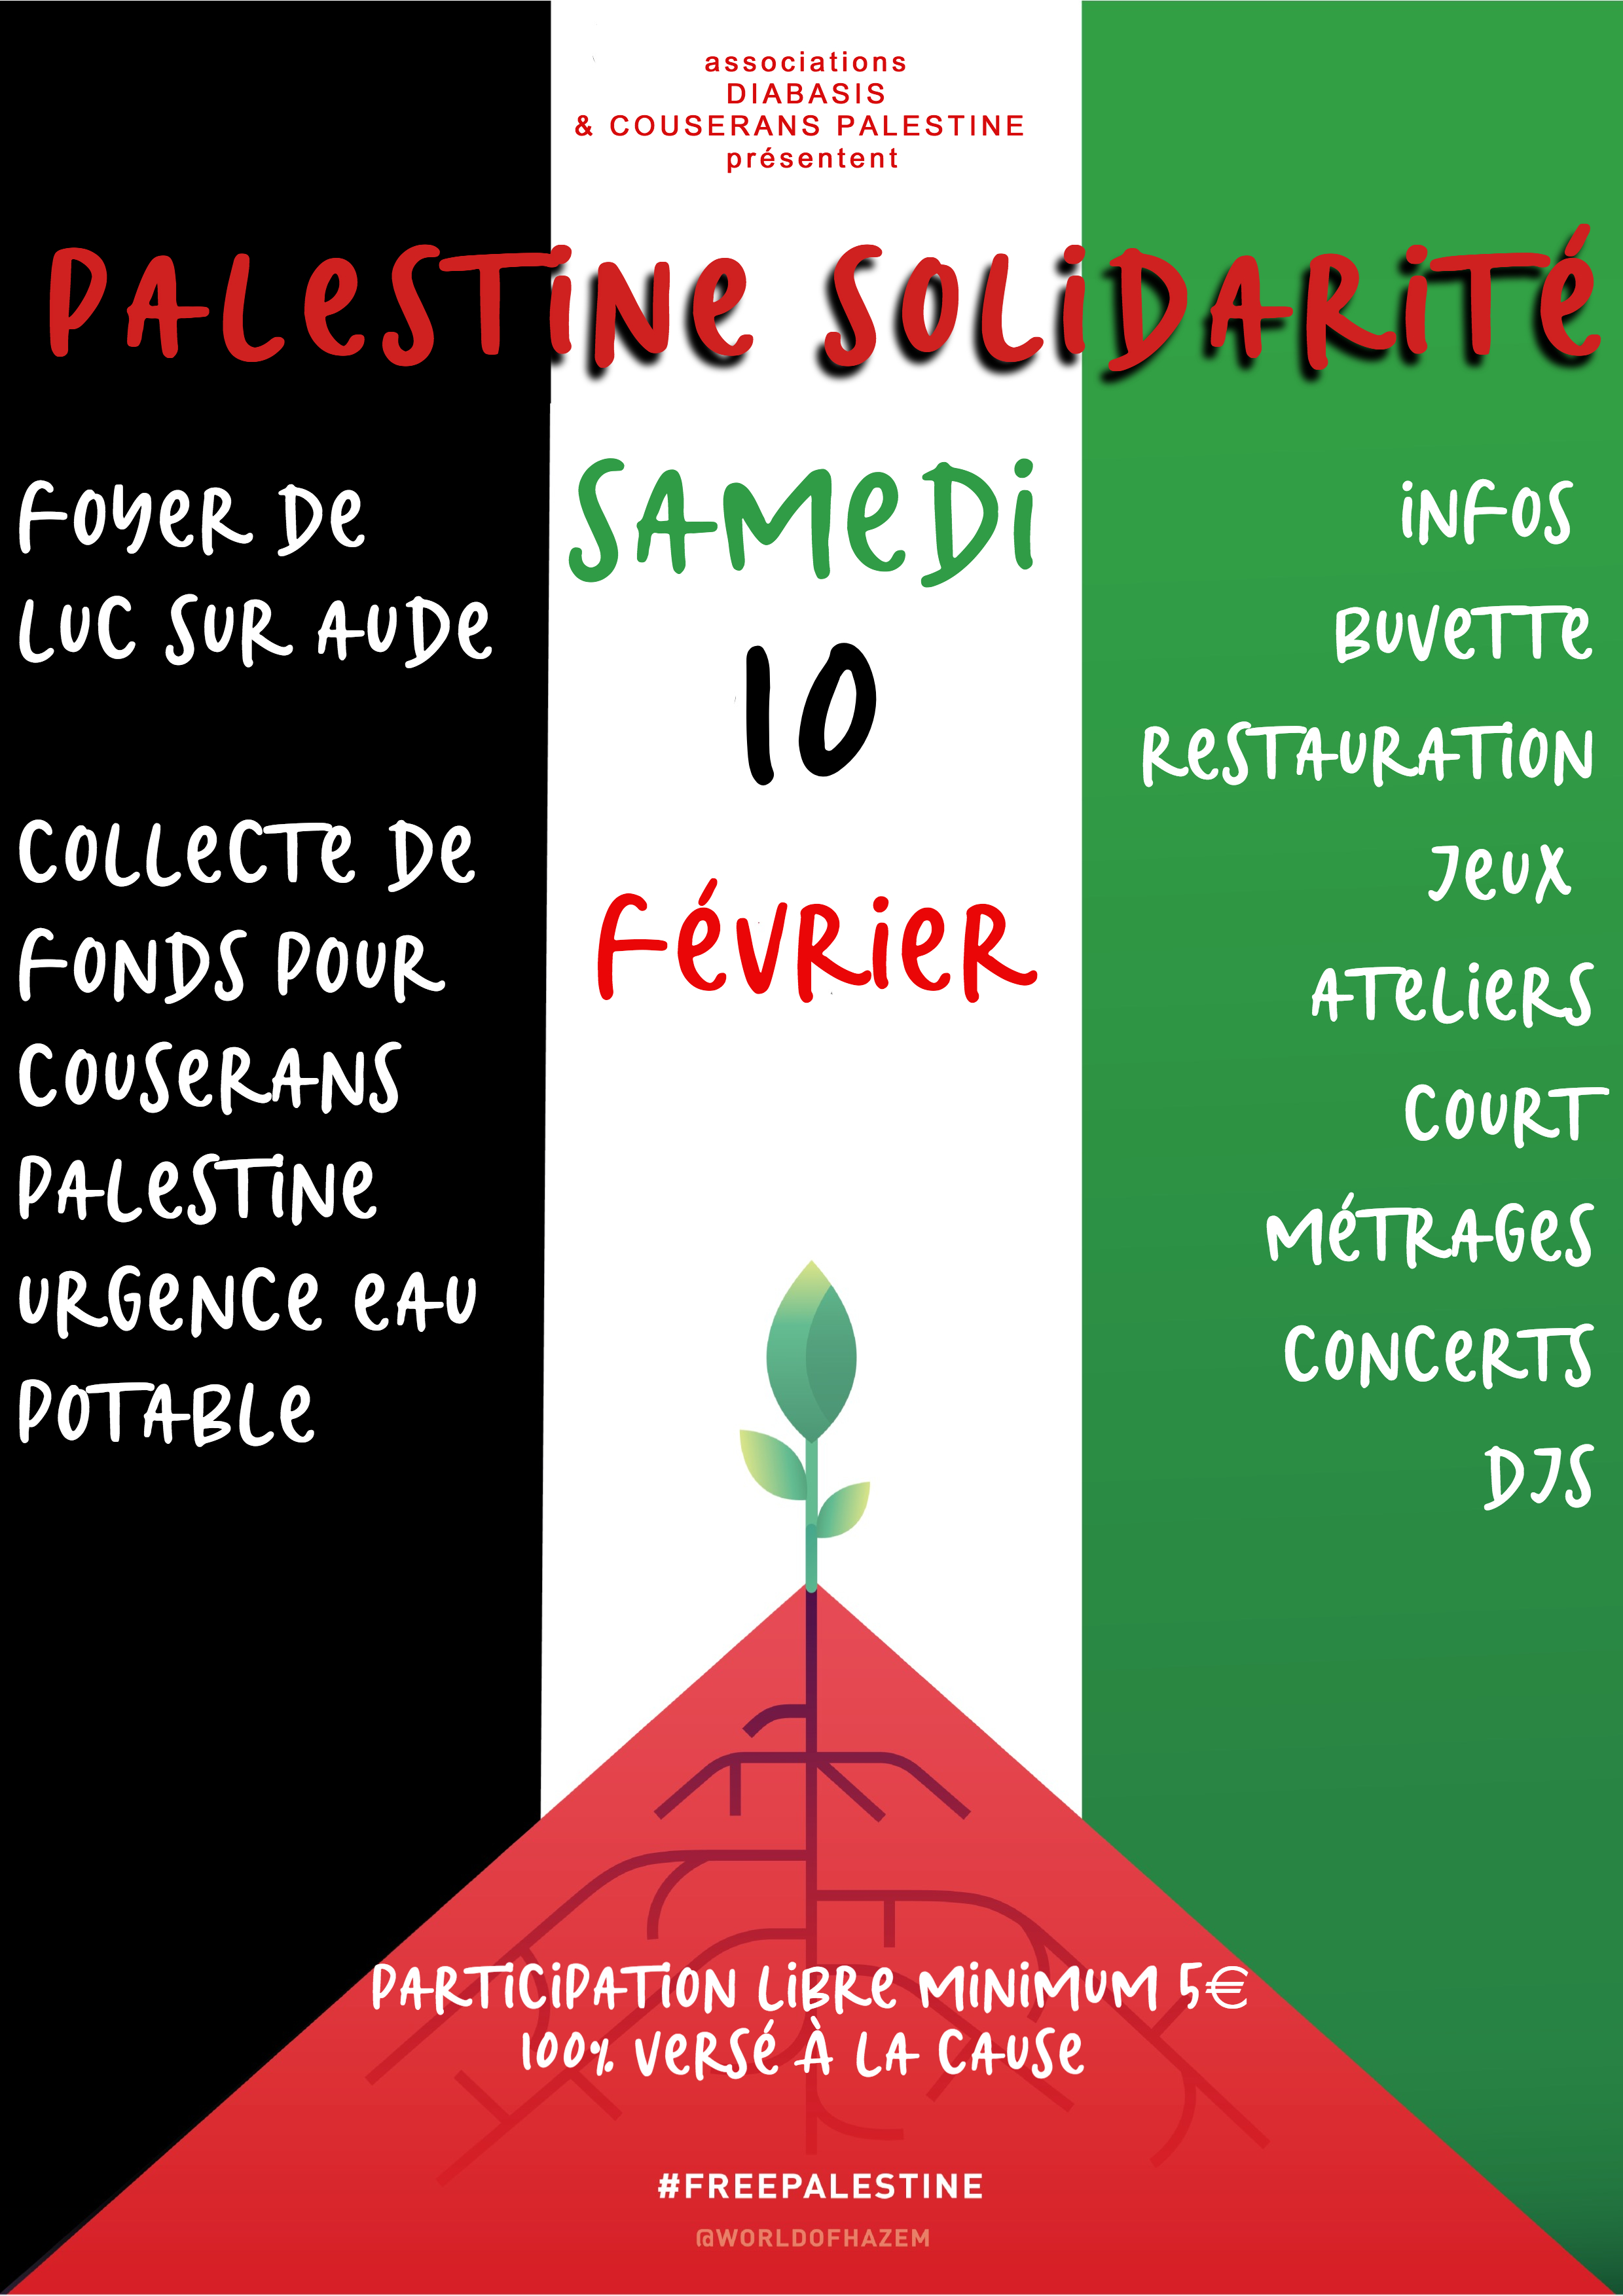 Palestine solidarité Luc sur Aude